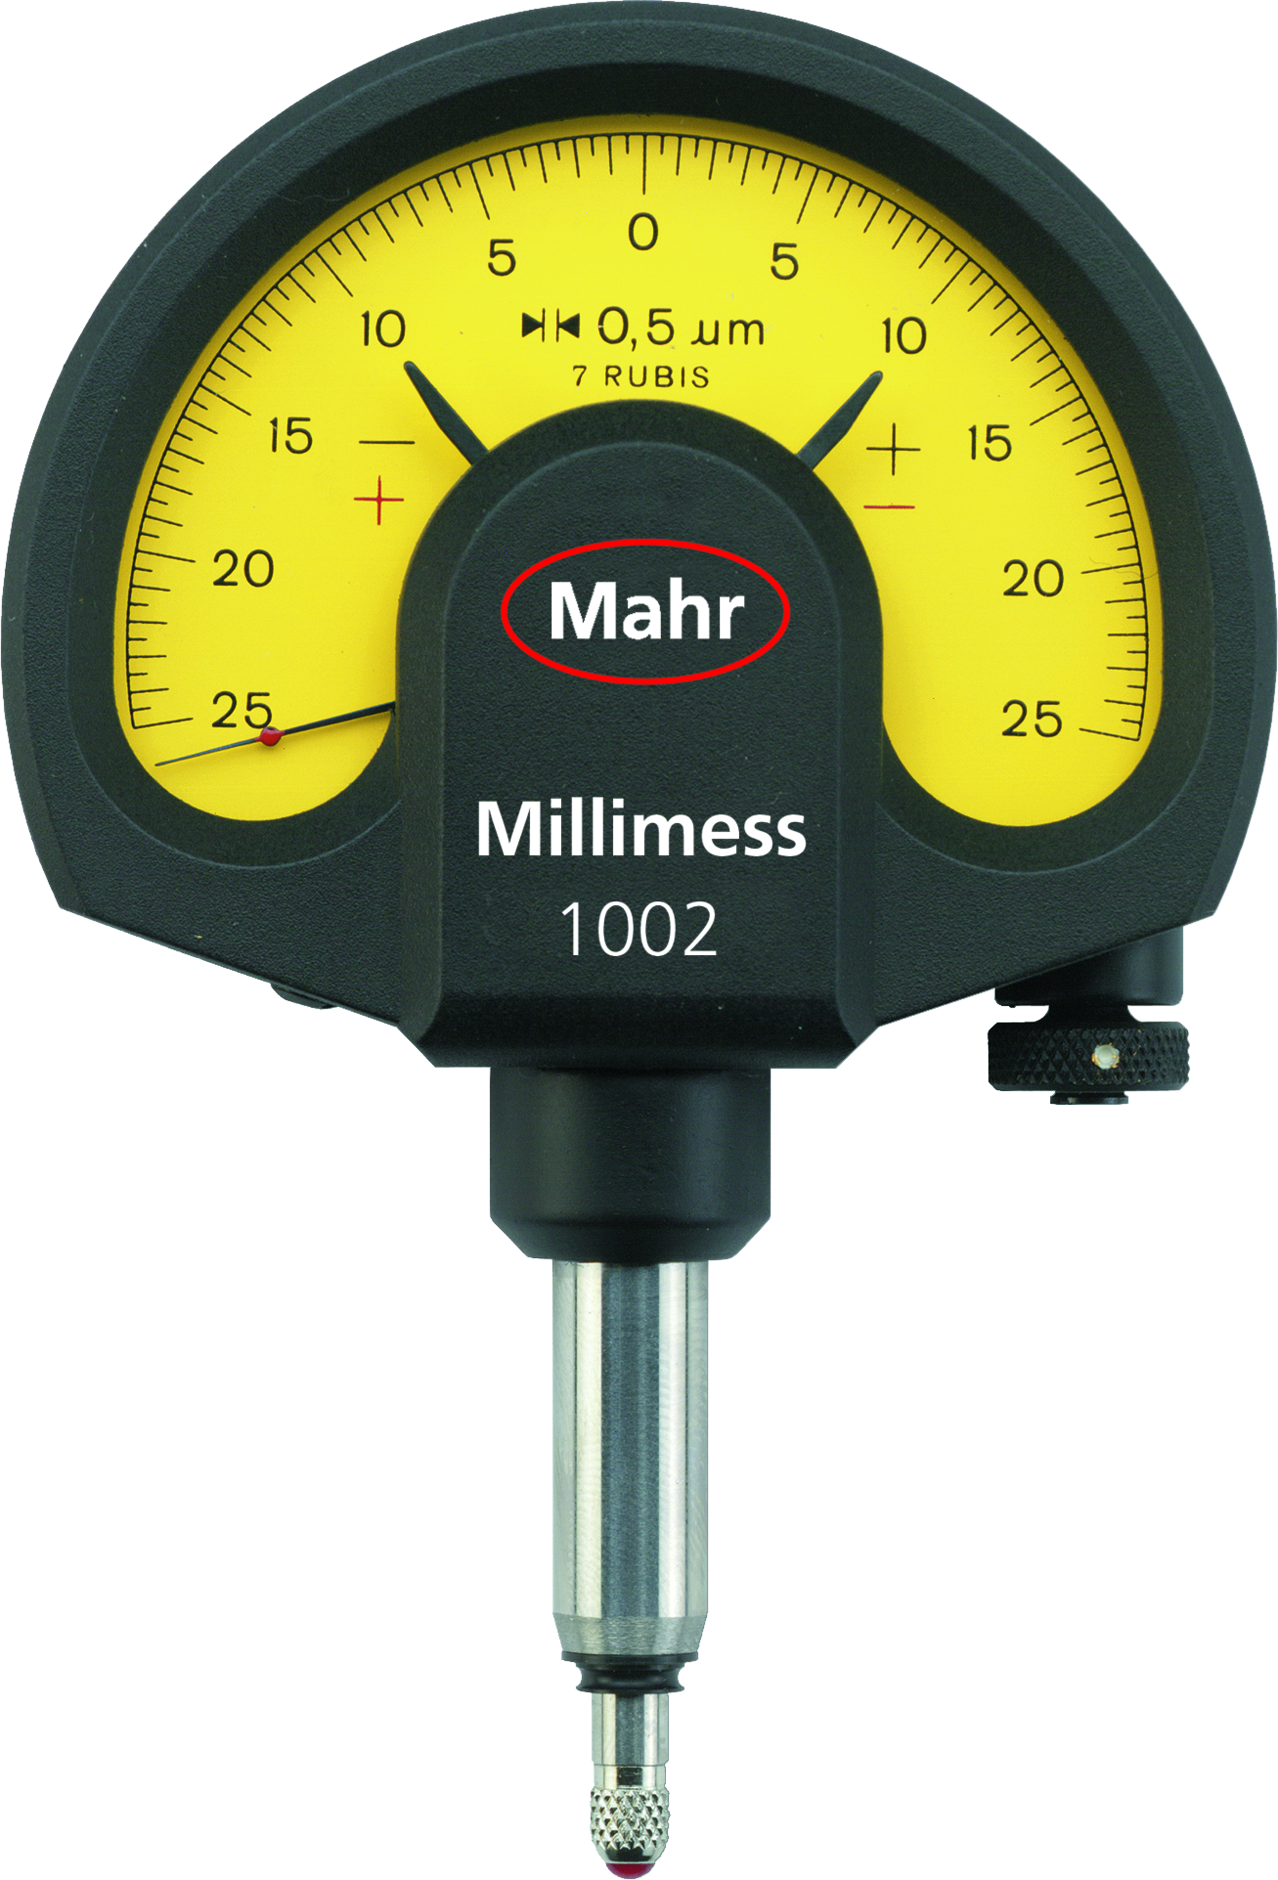 Comparateur micromètre Roch France 0.01 mm précision *NEUF*